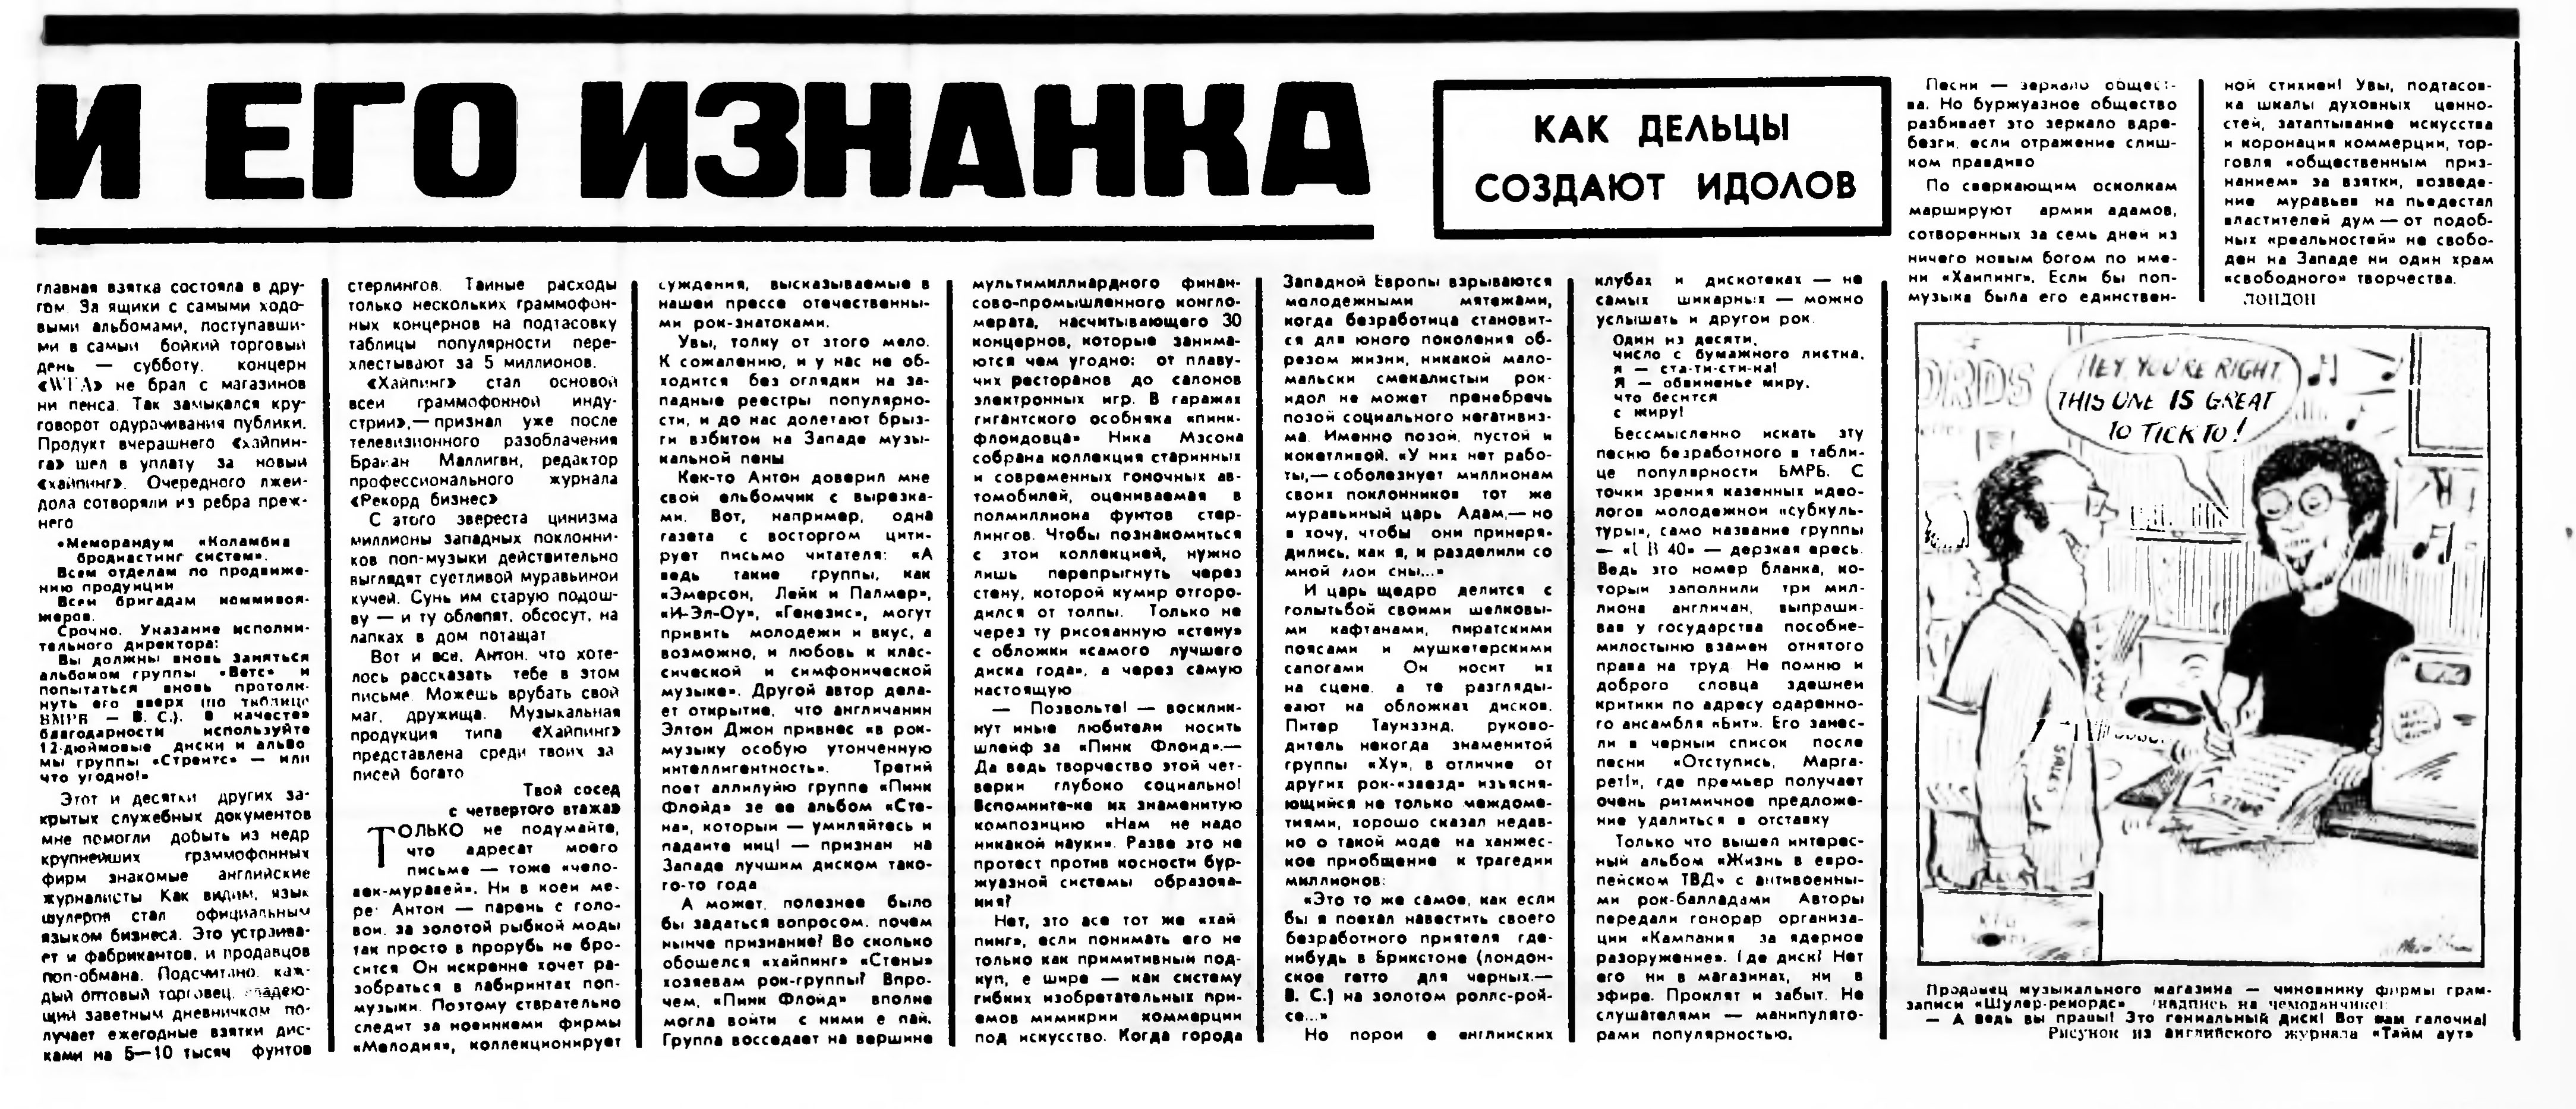 Газета писателей 2. Газета апрель. "Литературная газета" март 1978 год..